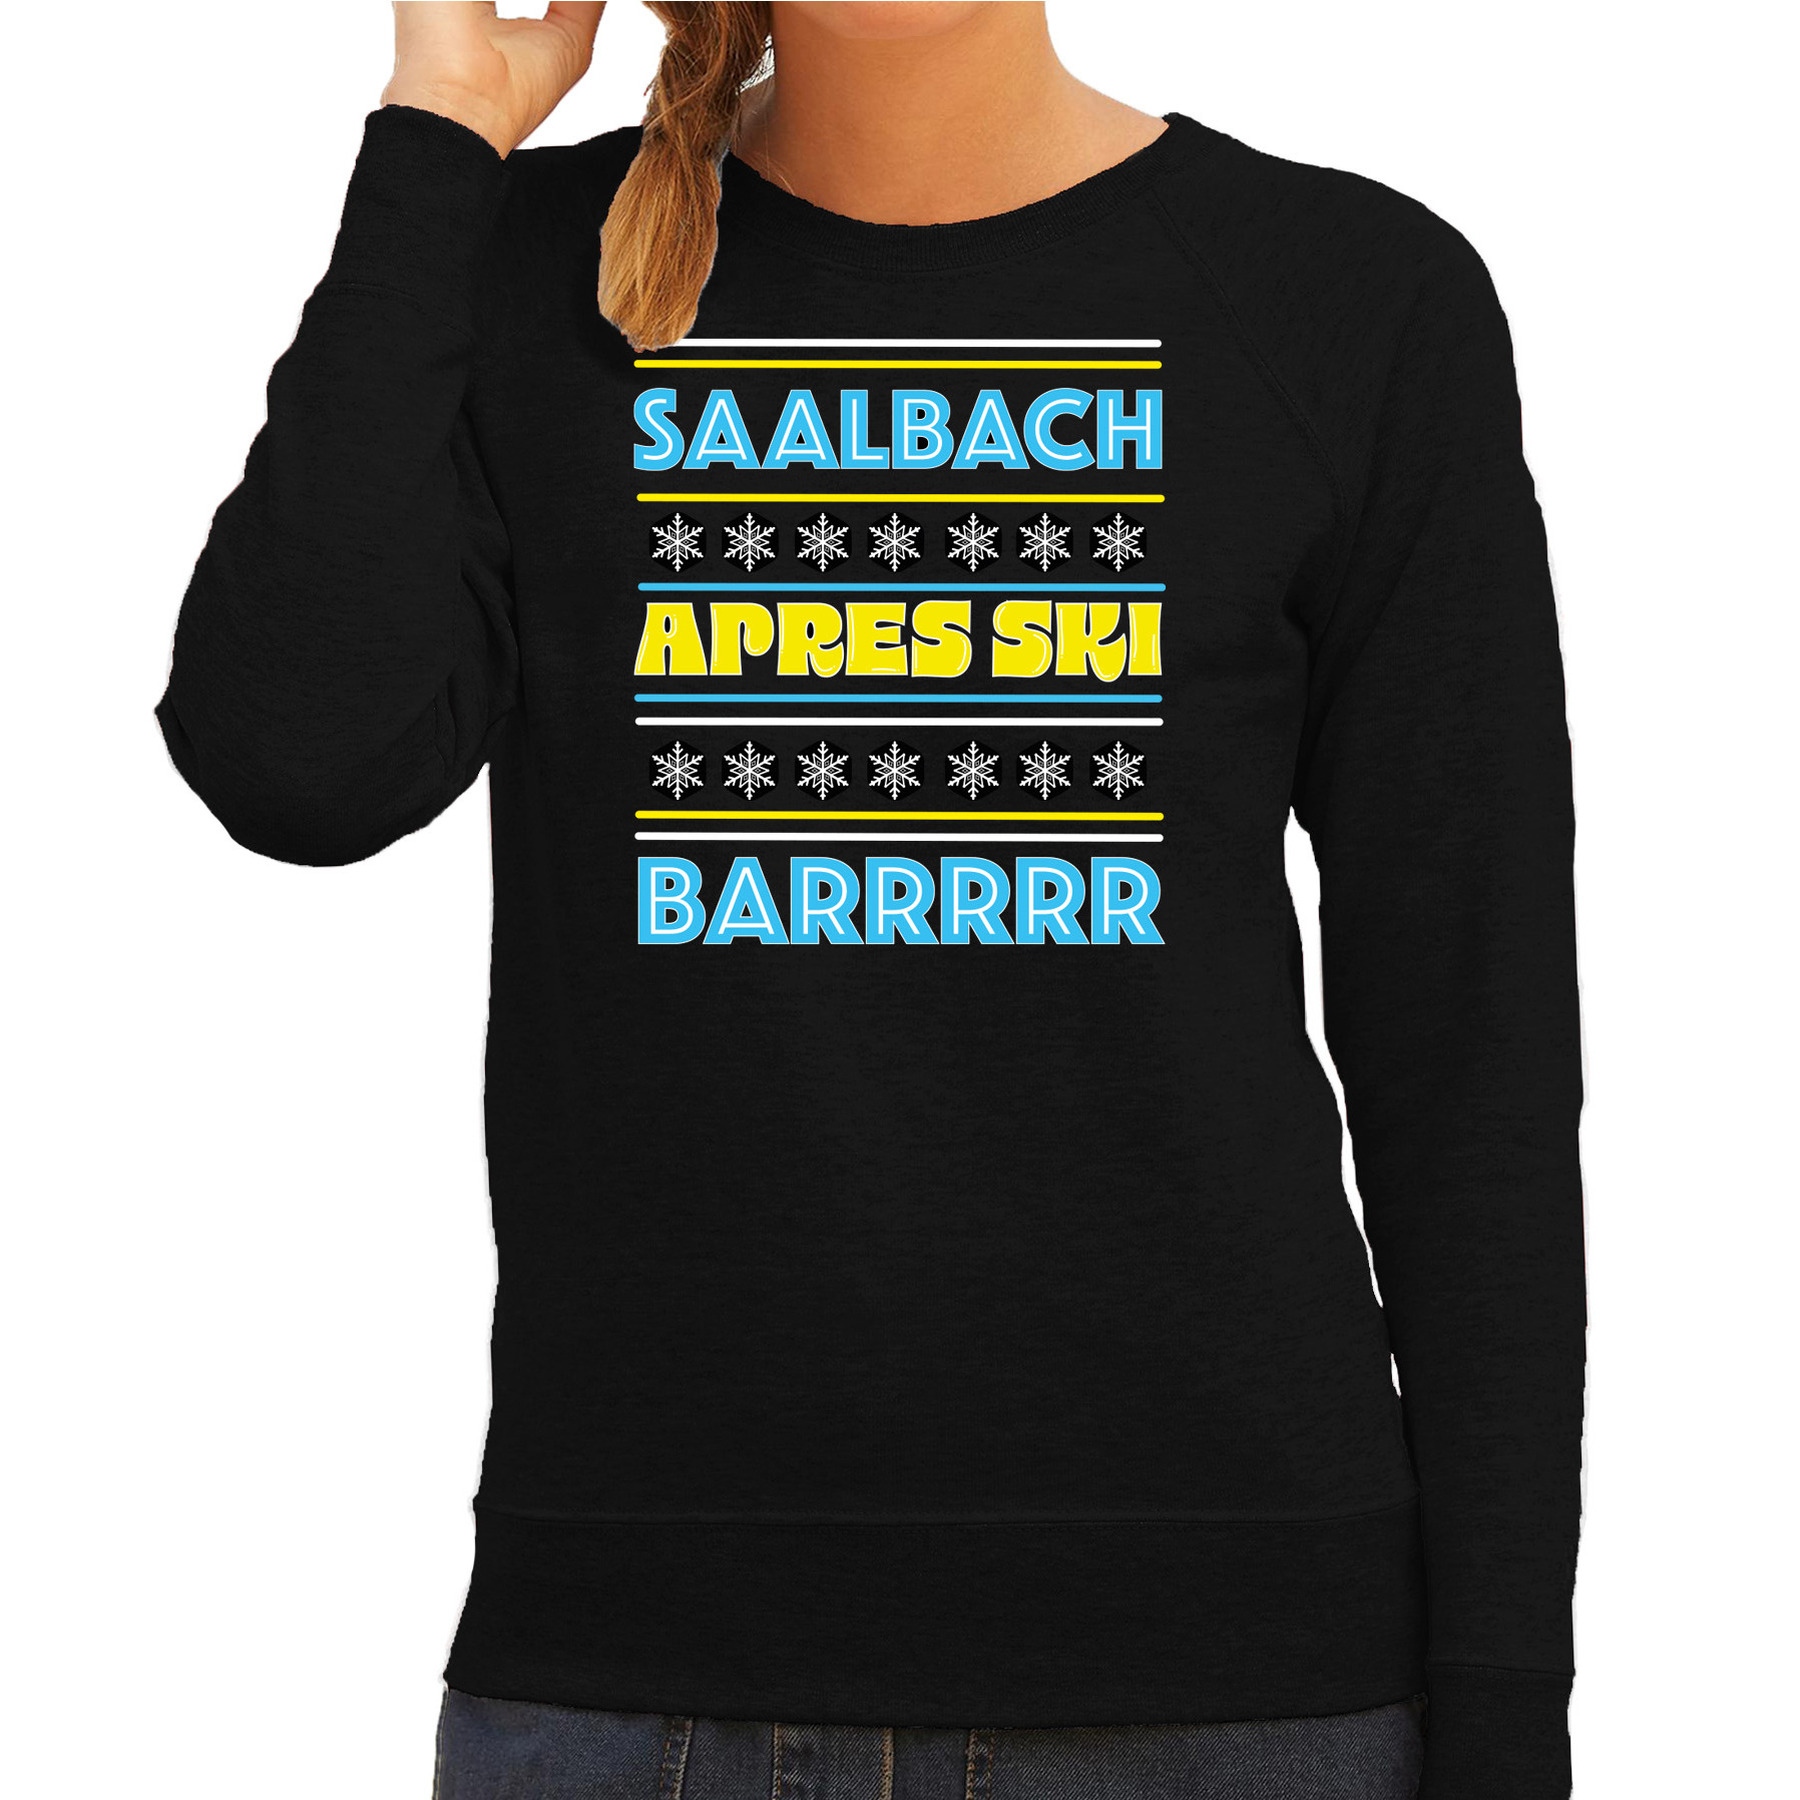 Apres ski sweater voor dames Saalbach zwart apresski bar skien-snowboarden wintersport